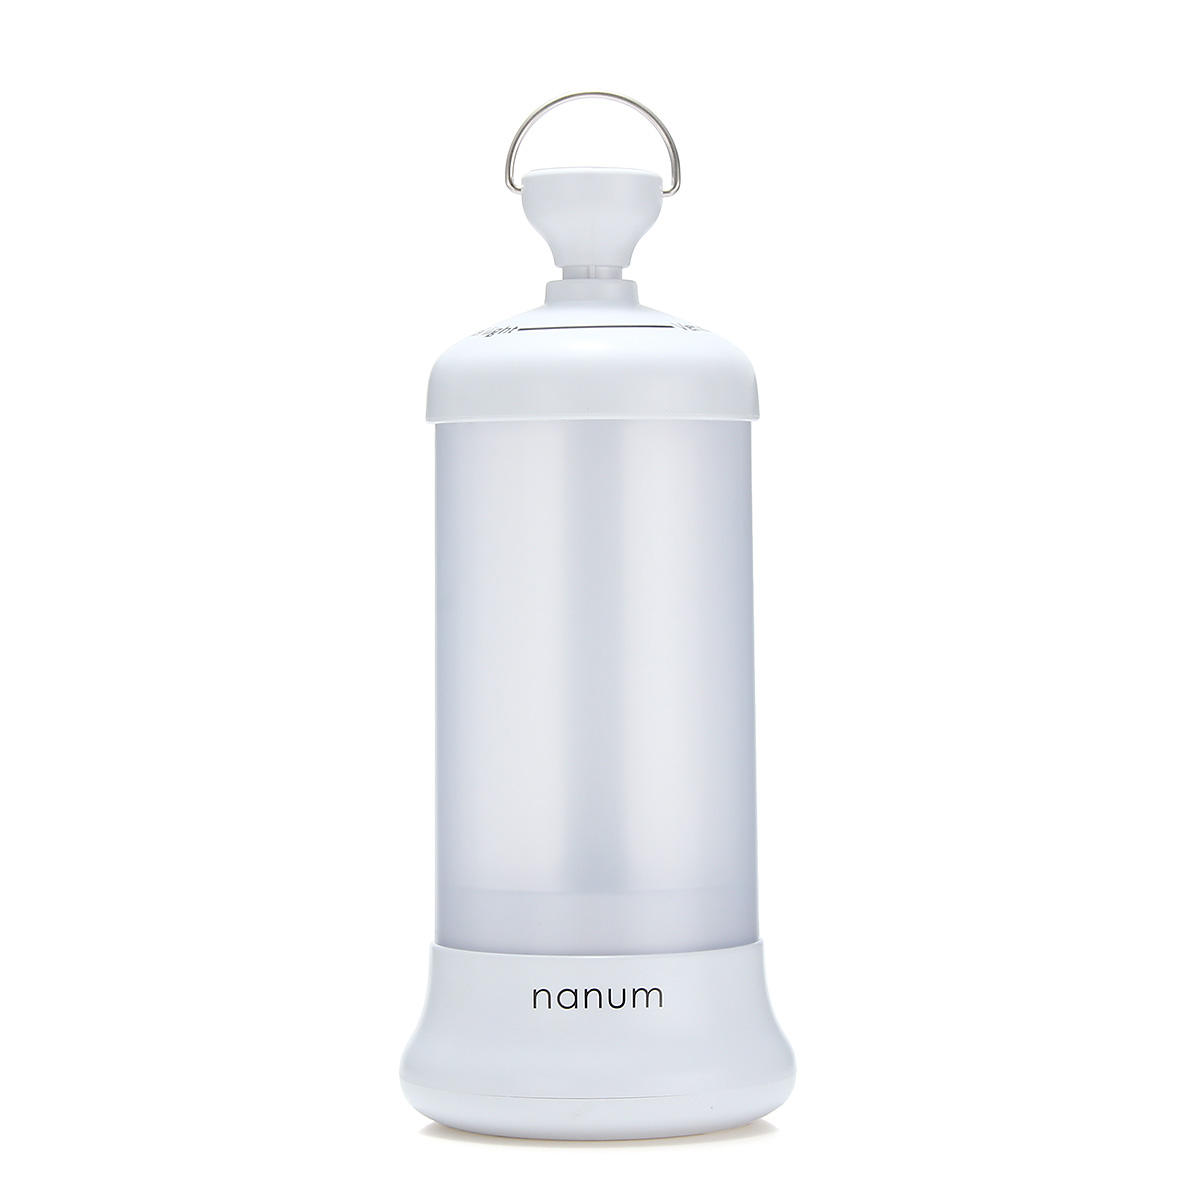 Nanum voiture Voyage lumières USB Chargeur camping extérieur portable télescopique blanc d'urgence lanternes